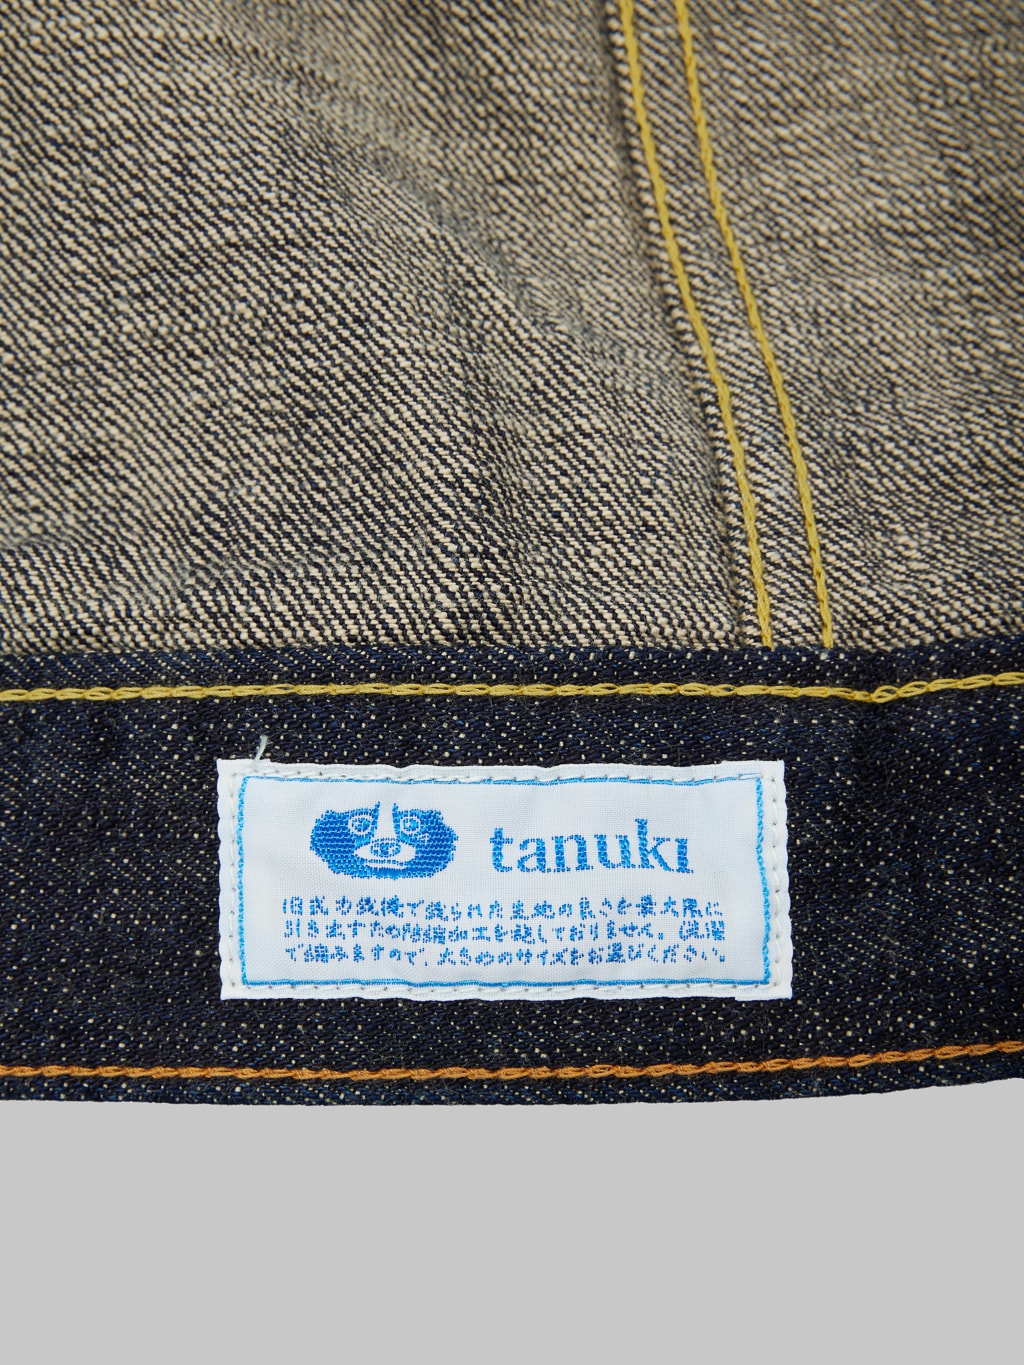 Tanuki zetto benkei type III jacket brand tag